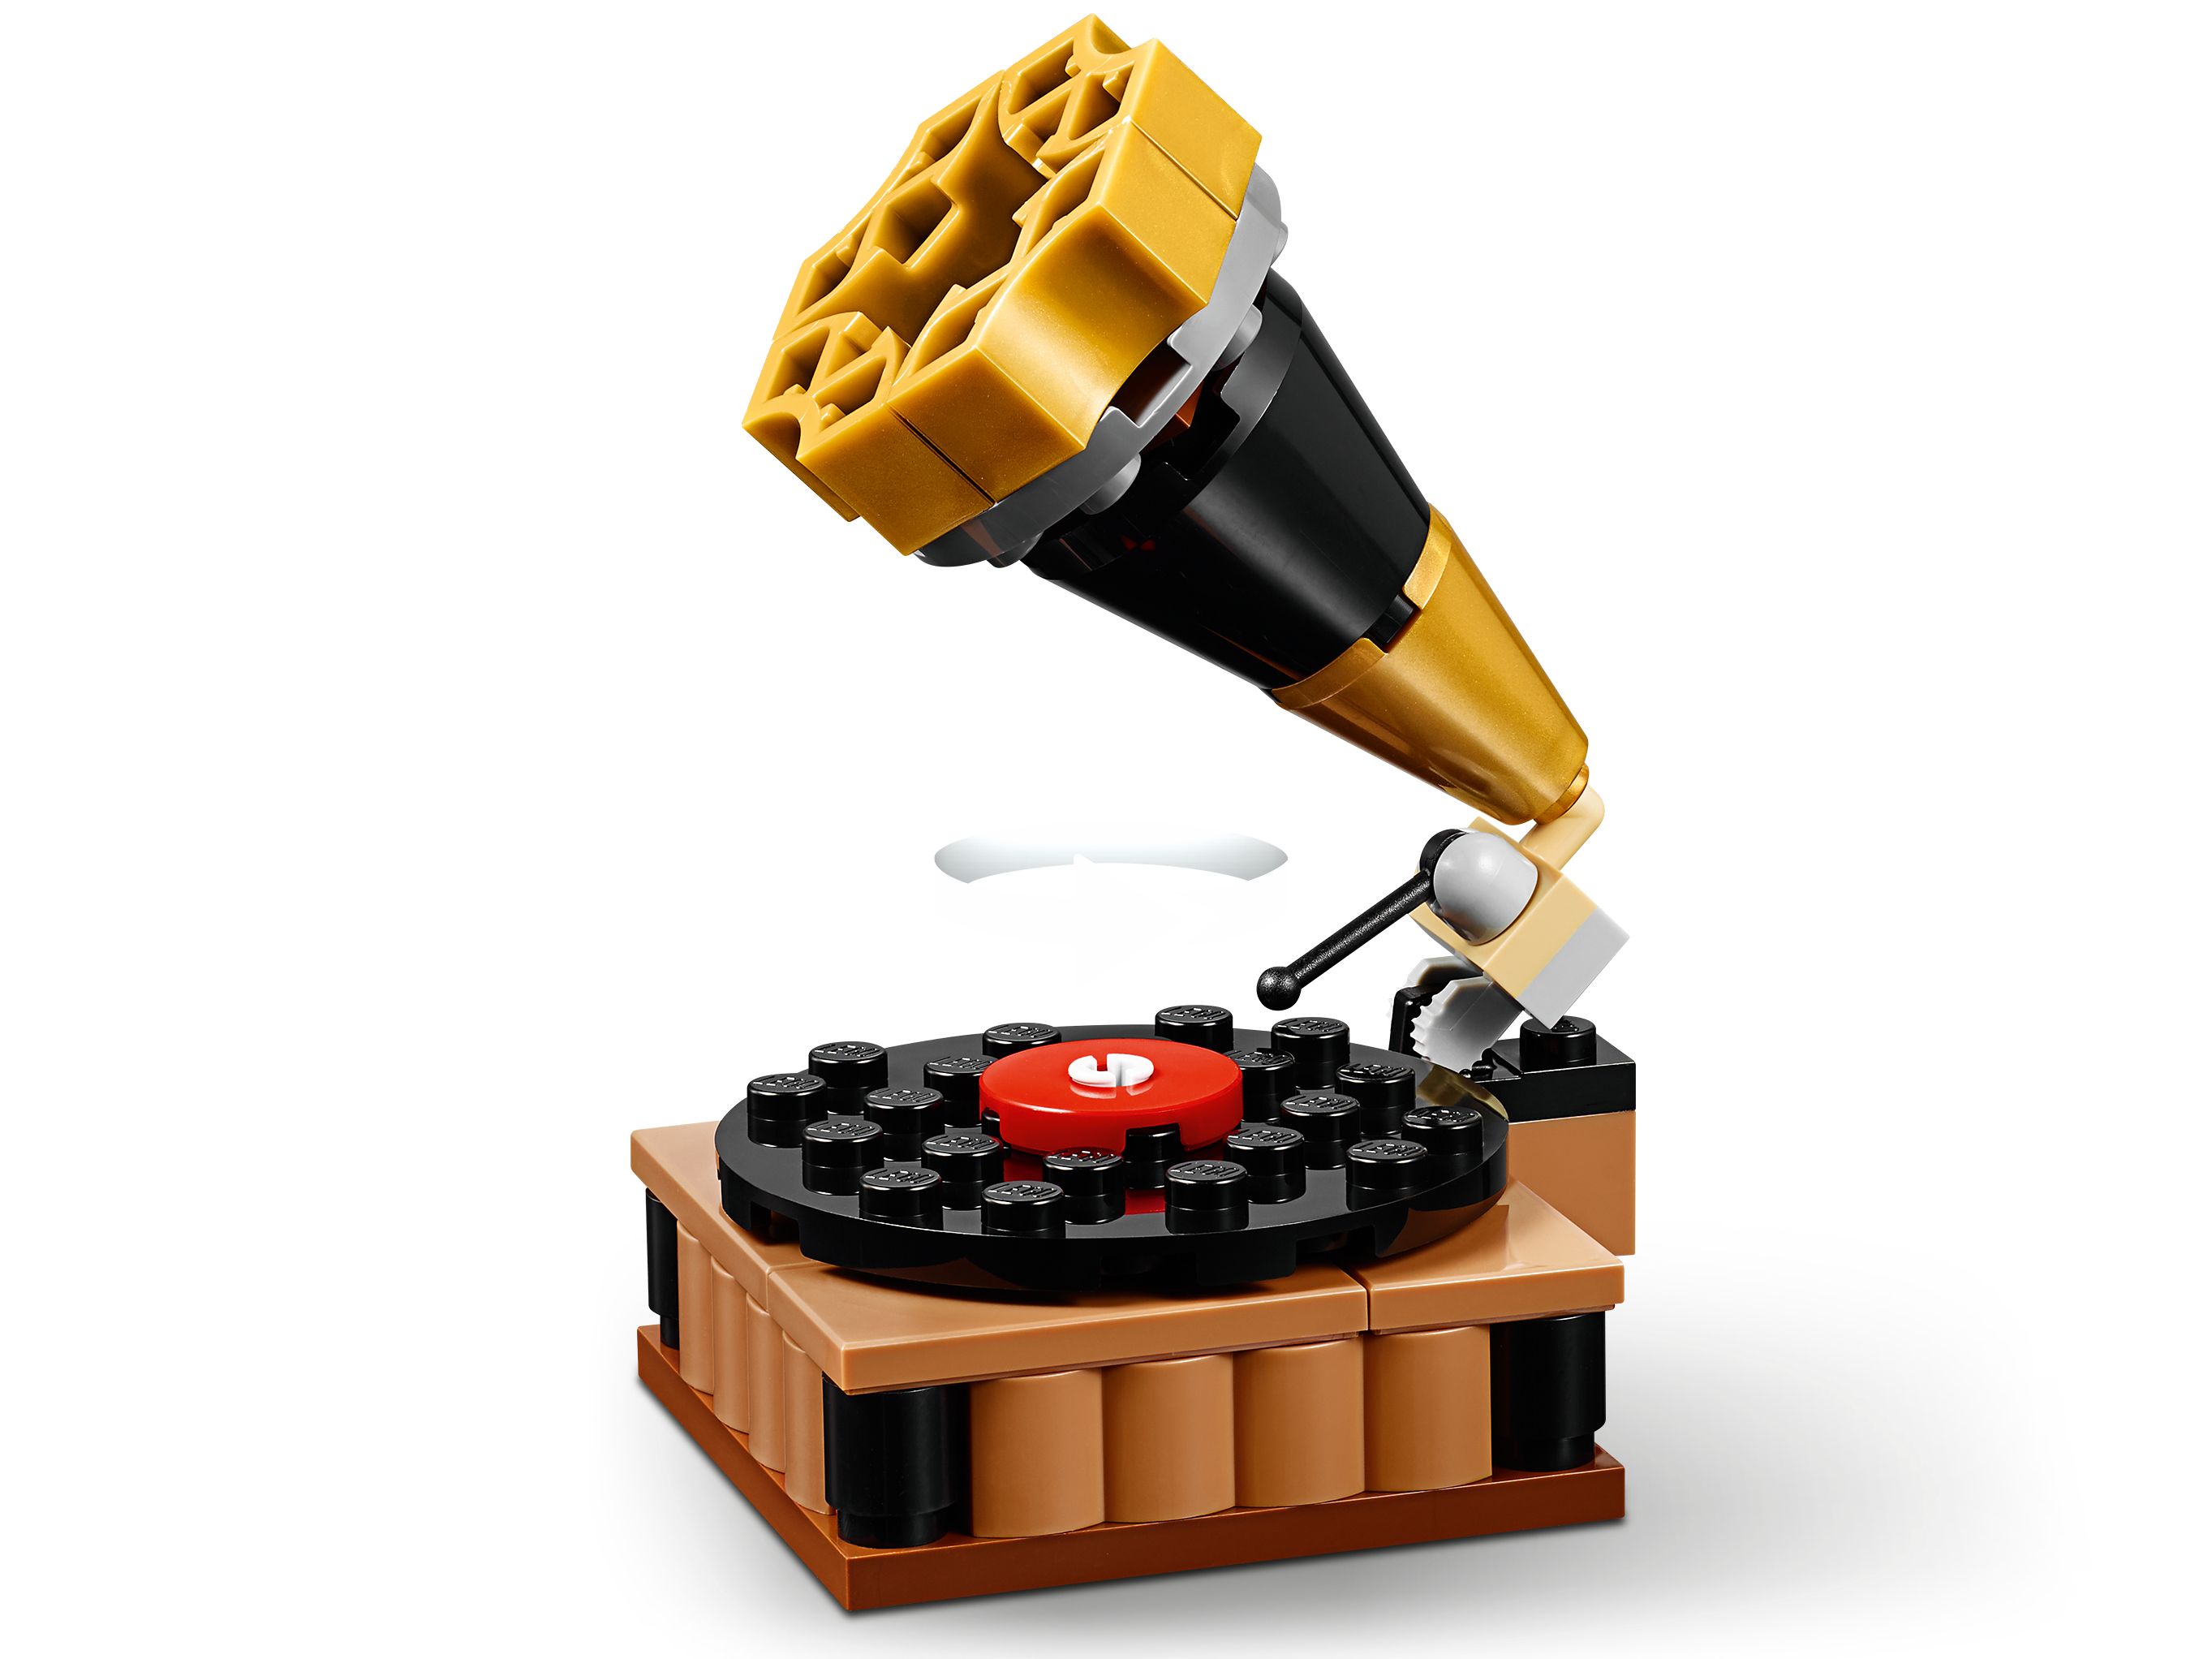 Extra Large Brick Box - LEGO Classic set 11717